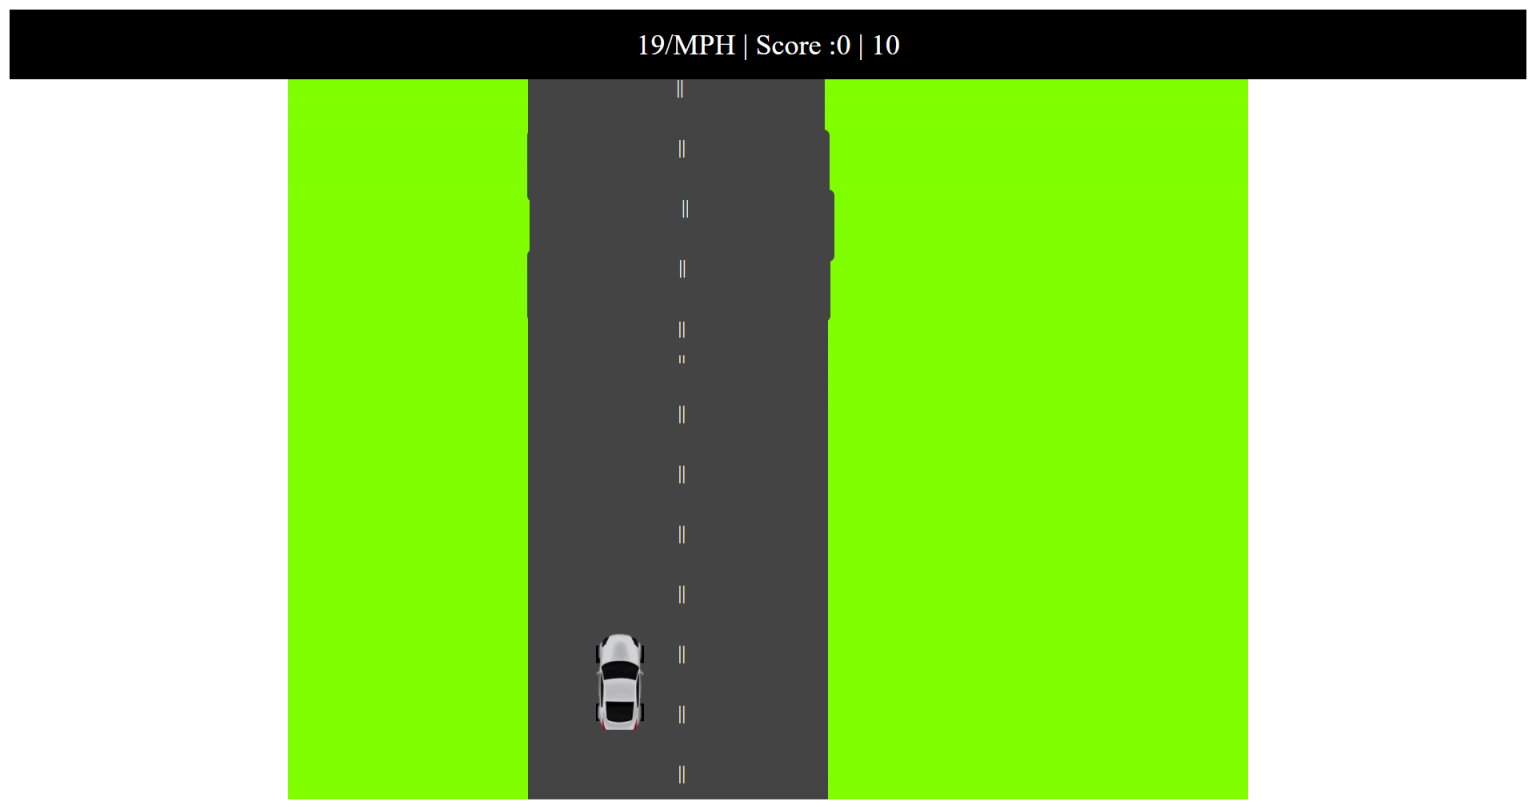 car racing game in java source code